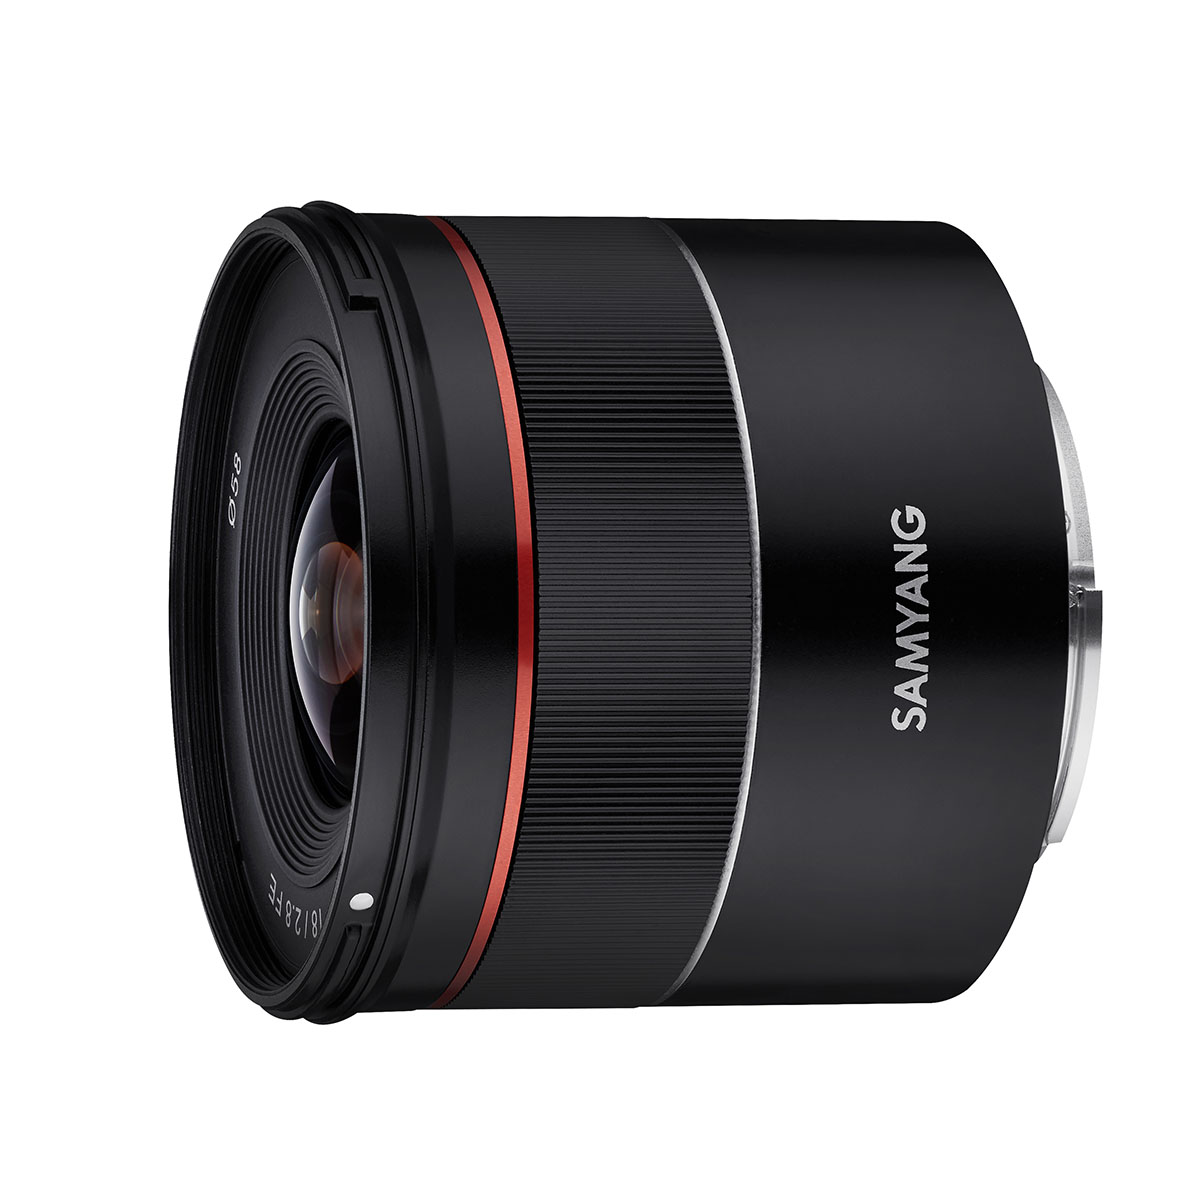 Ống kính máy ảnh hiệu Samyang AF 18mm F2.8 Cho Sony E - Hàng Chính Hãng